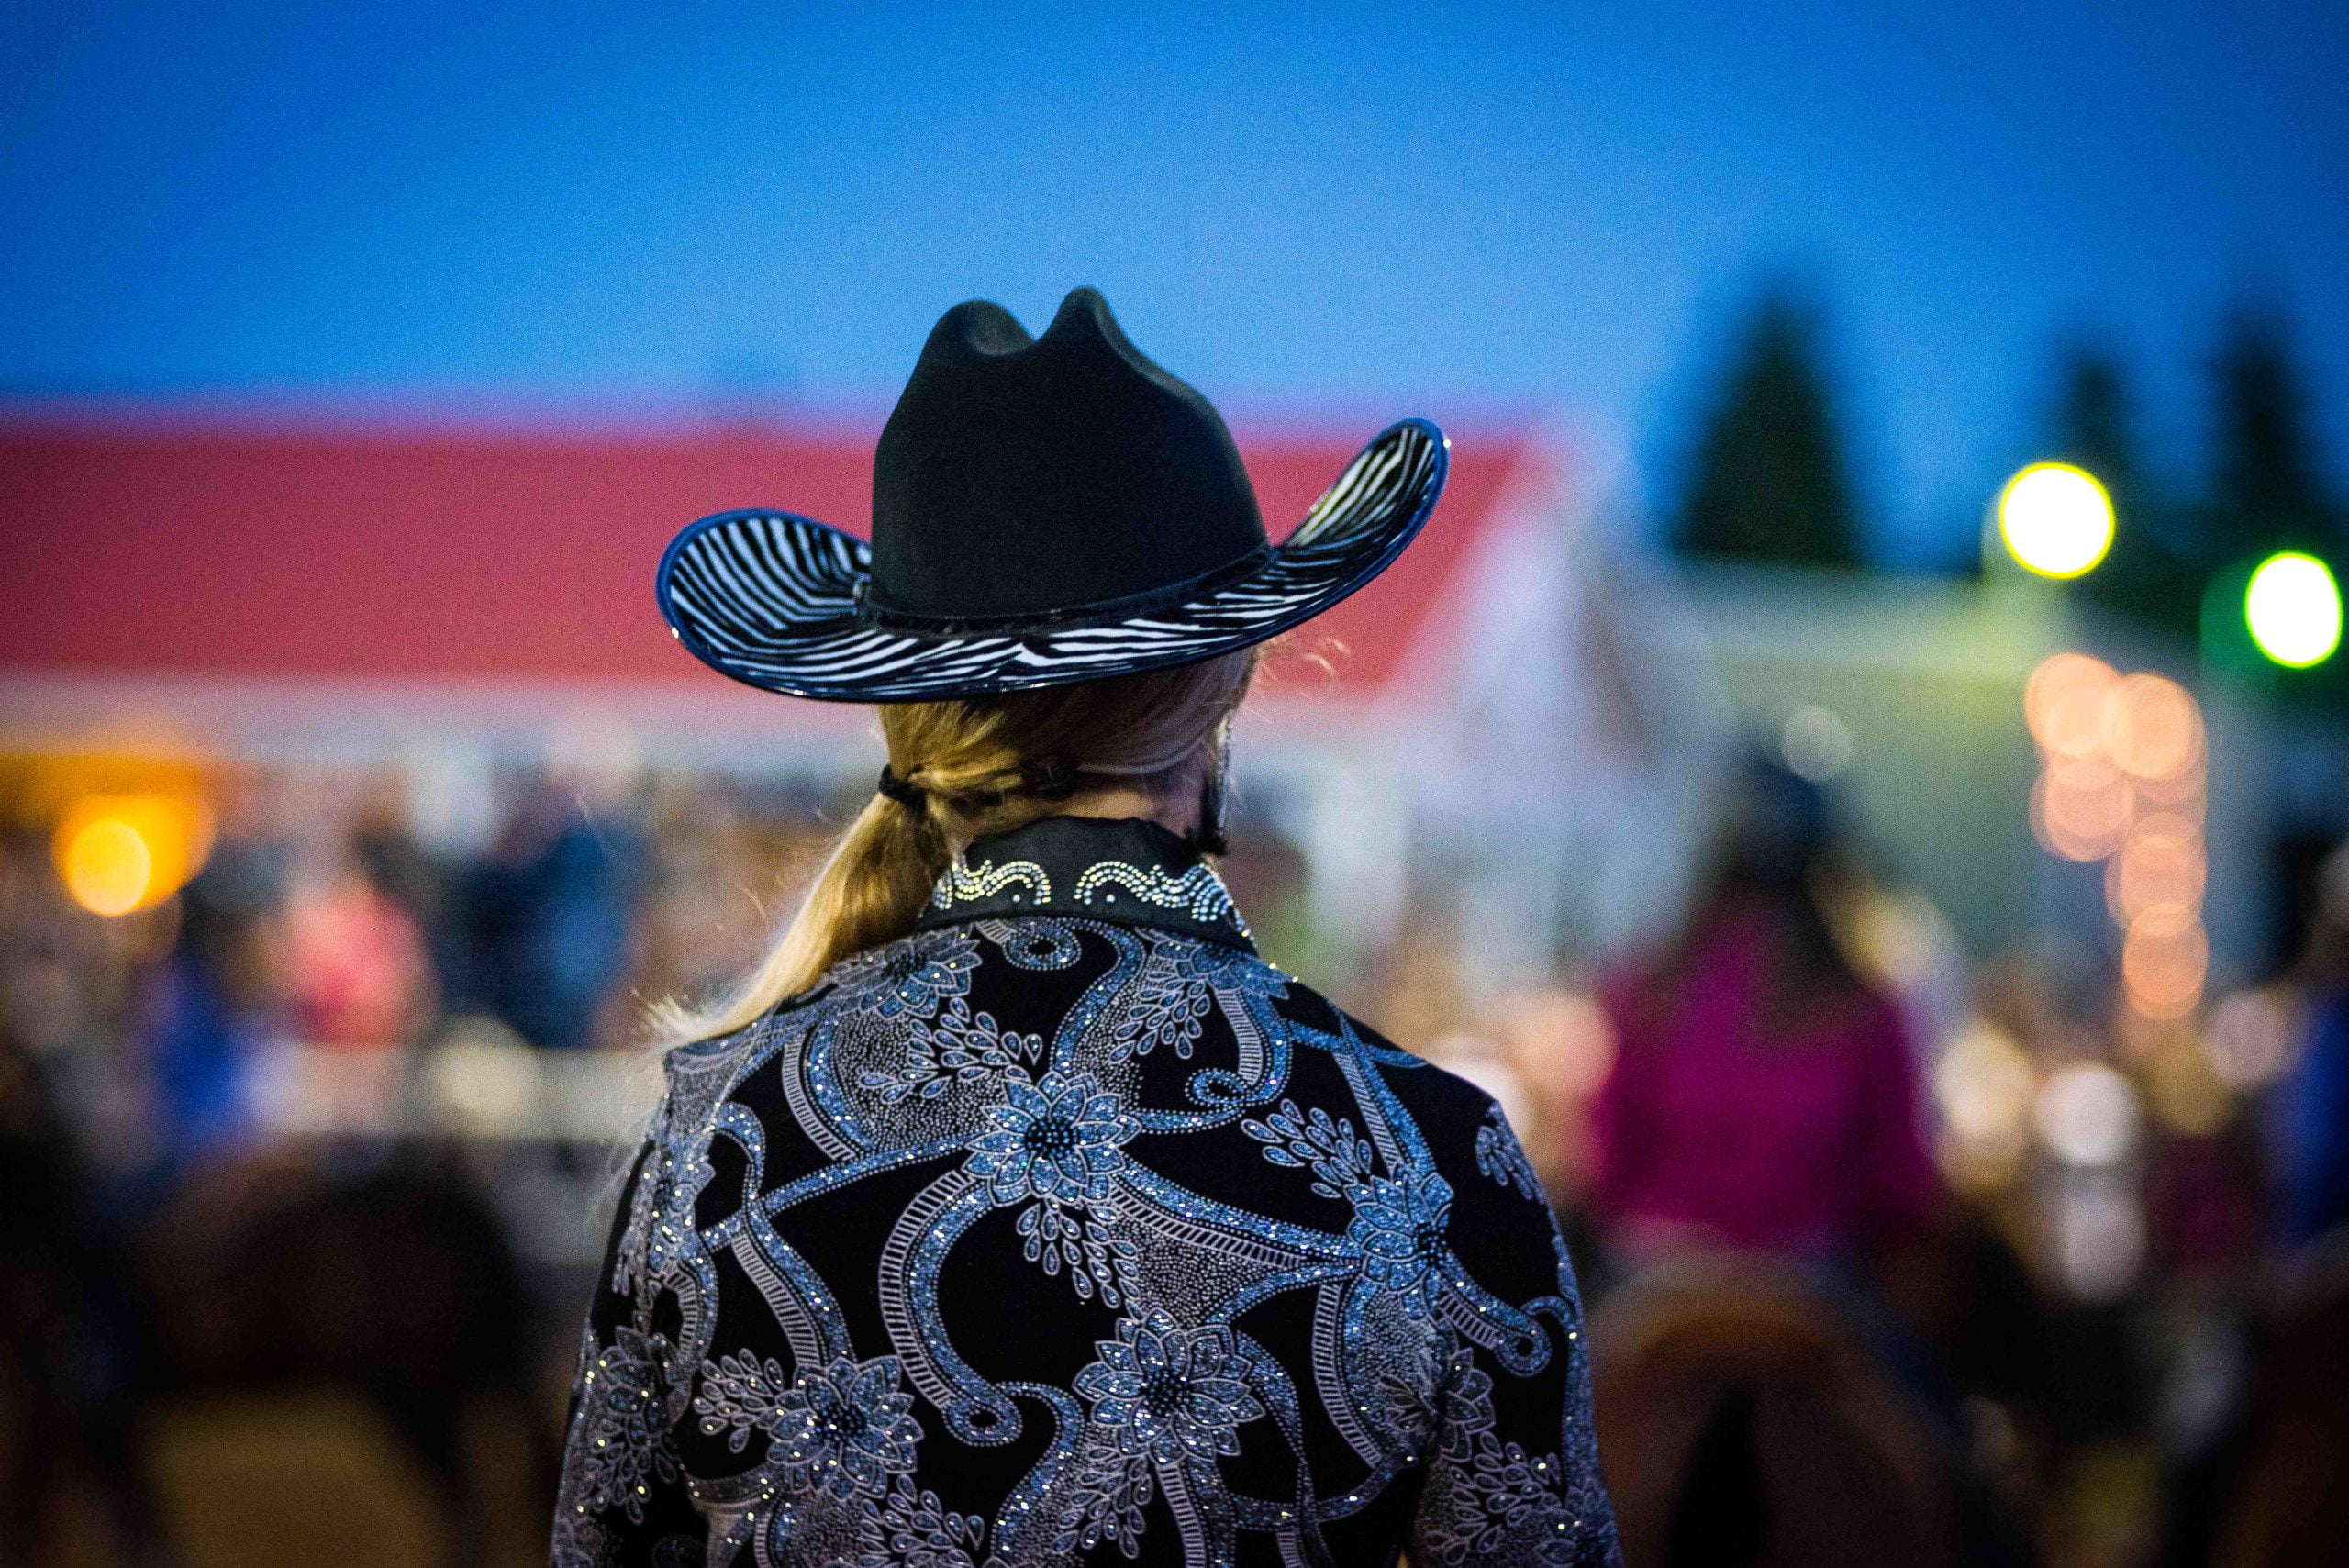 La photo présente une cowgirl de dos dans un bel habit noir serti de paillettes argentées lors du Festival western de Guigues.